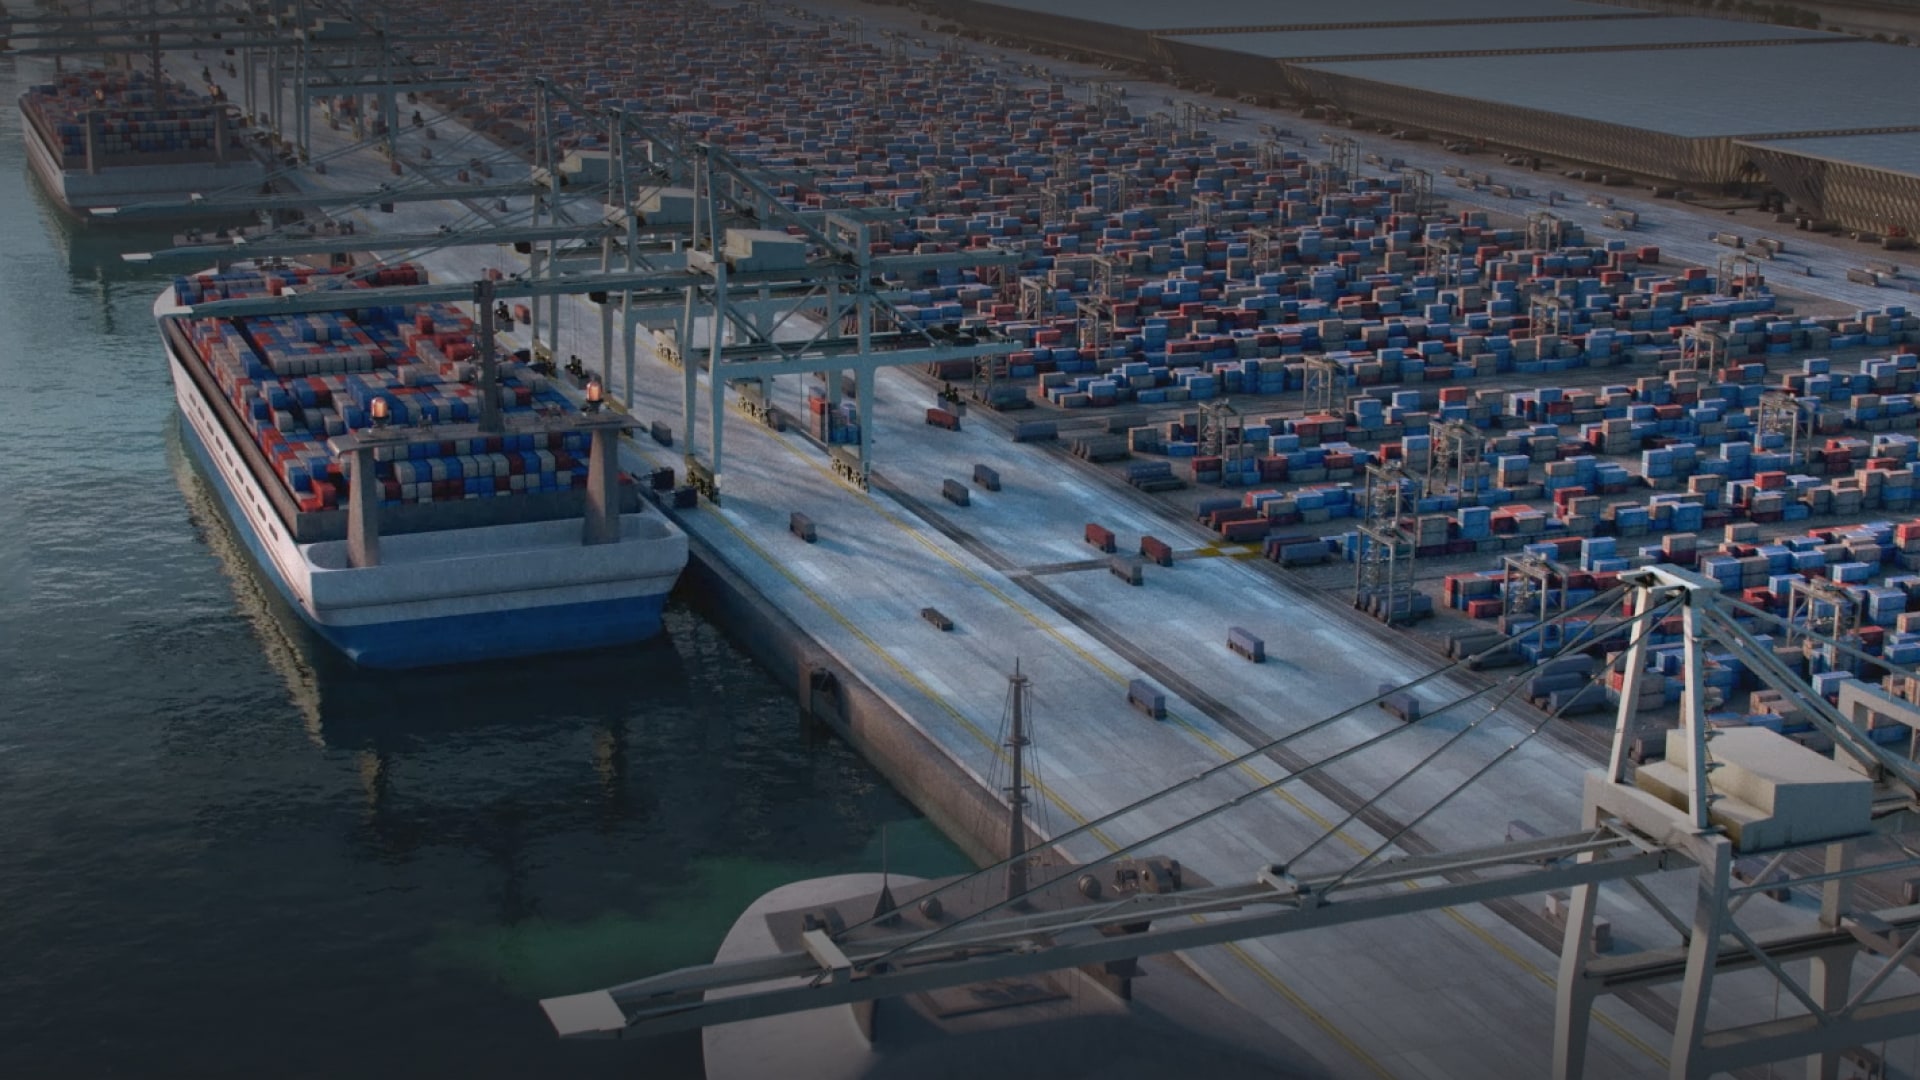 Hafen von NEOM in Oxagon: Hafen der nächsten Generation mit integrierter Lieferkette